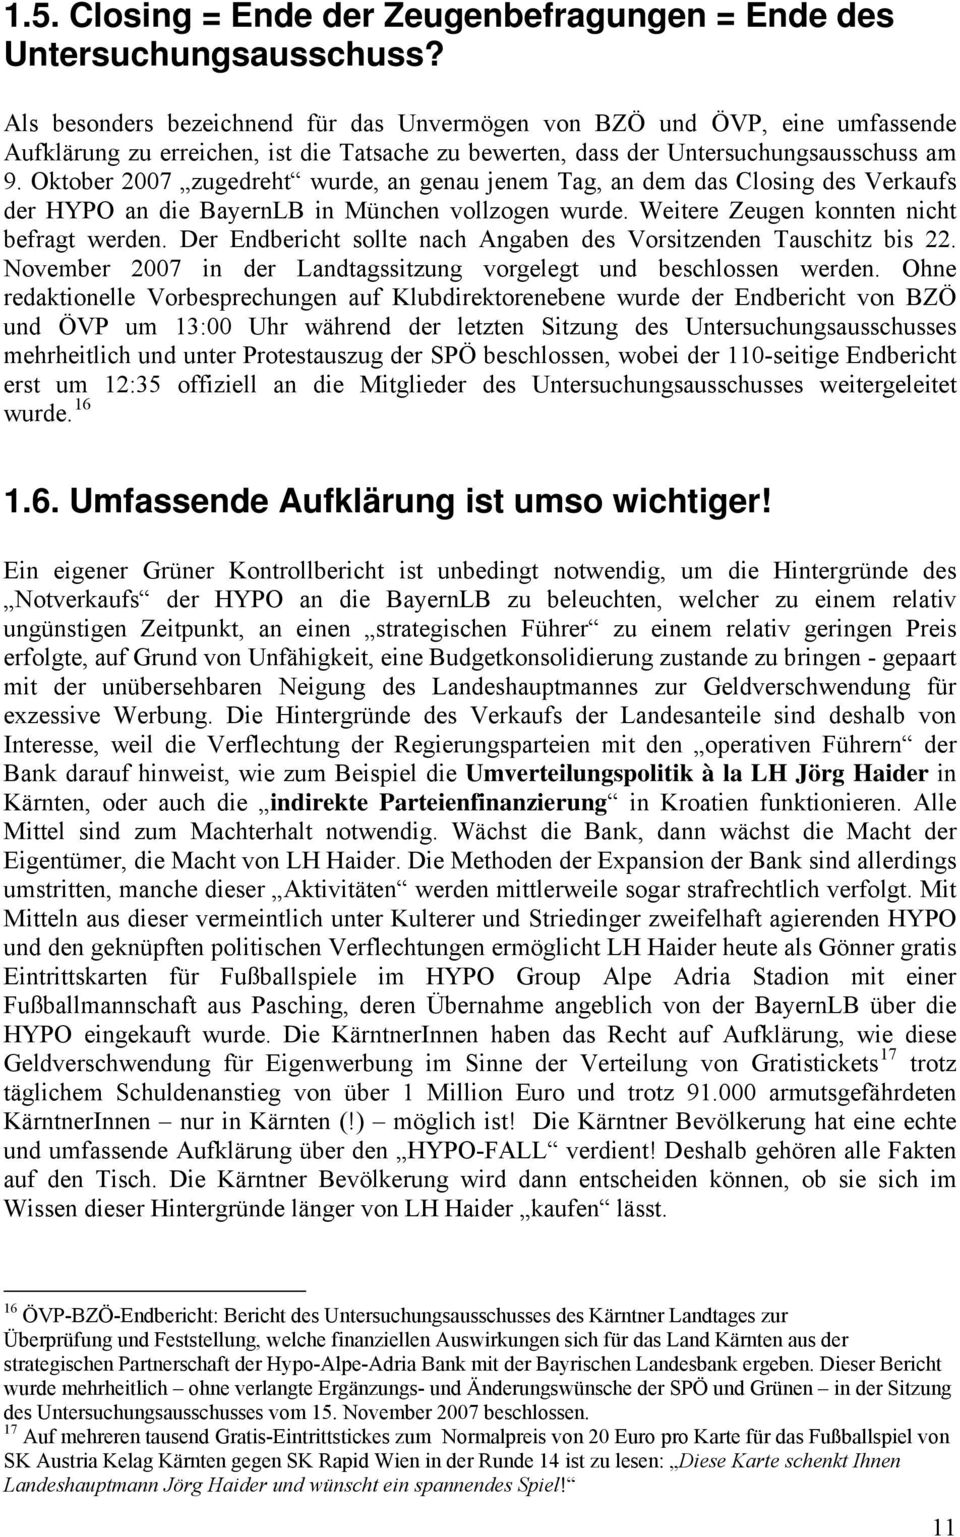 Oktober 2007 zugedreht wurde, an genau jenem Tag, an dem das Closing des Verkaufs der HYPO an die BayernLB in München vollzogen wurde. Weitere Zeugen konnten nicht befragt werden.